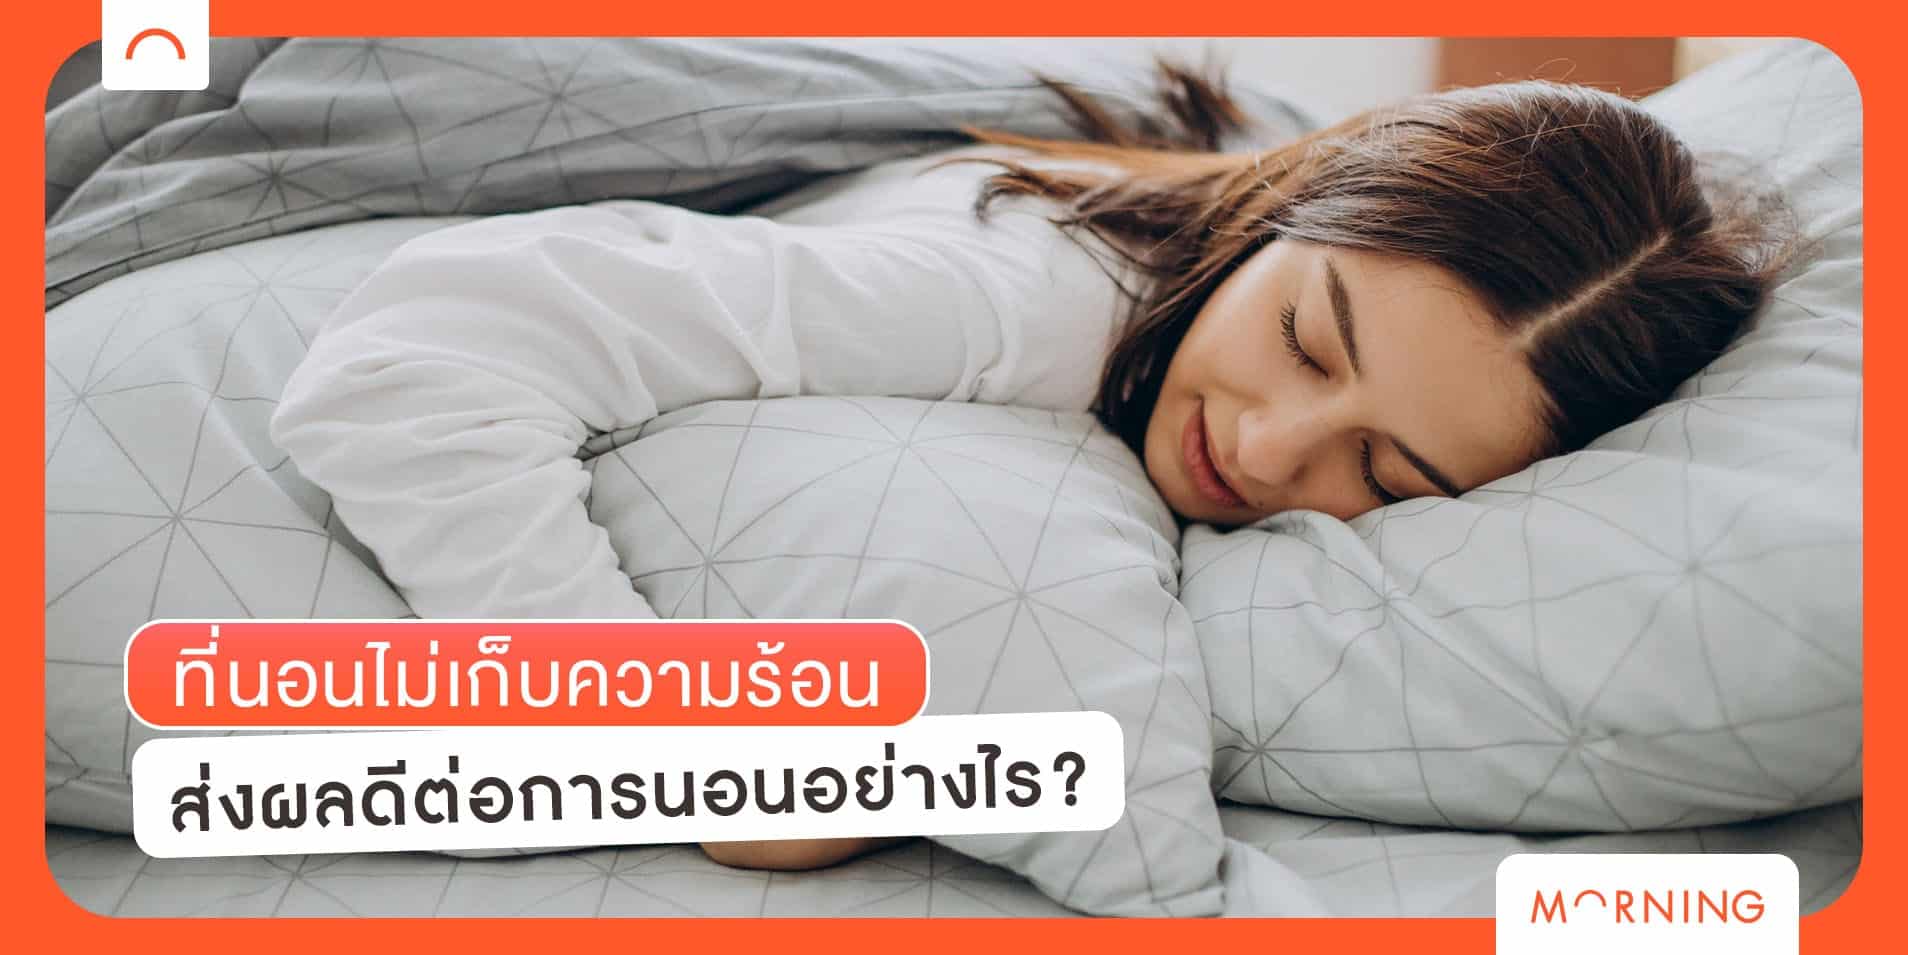 ที่นอนไม่เก็บความร้อน ส่งผลดีต่อการนอนอย่างไร?